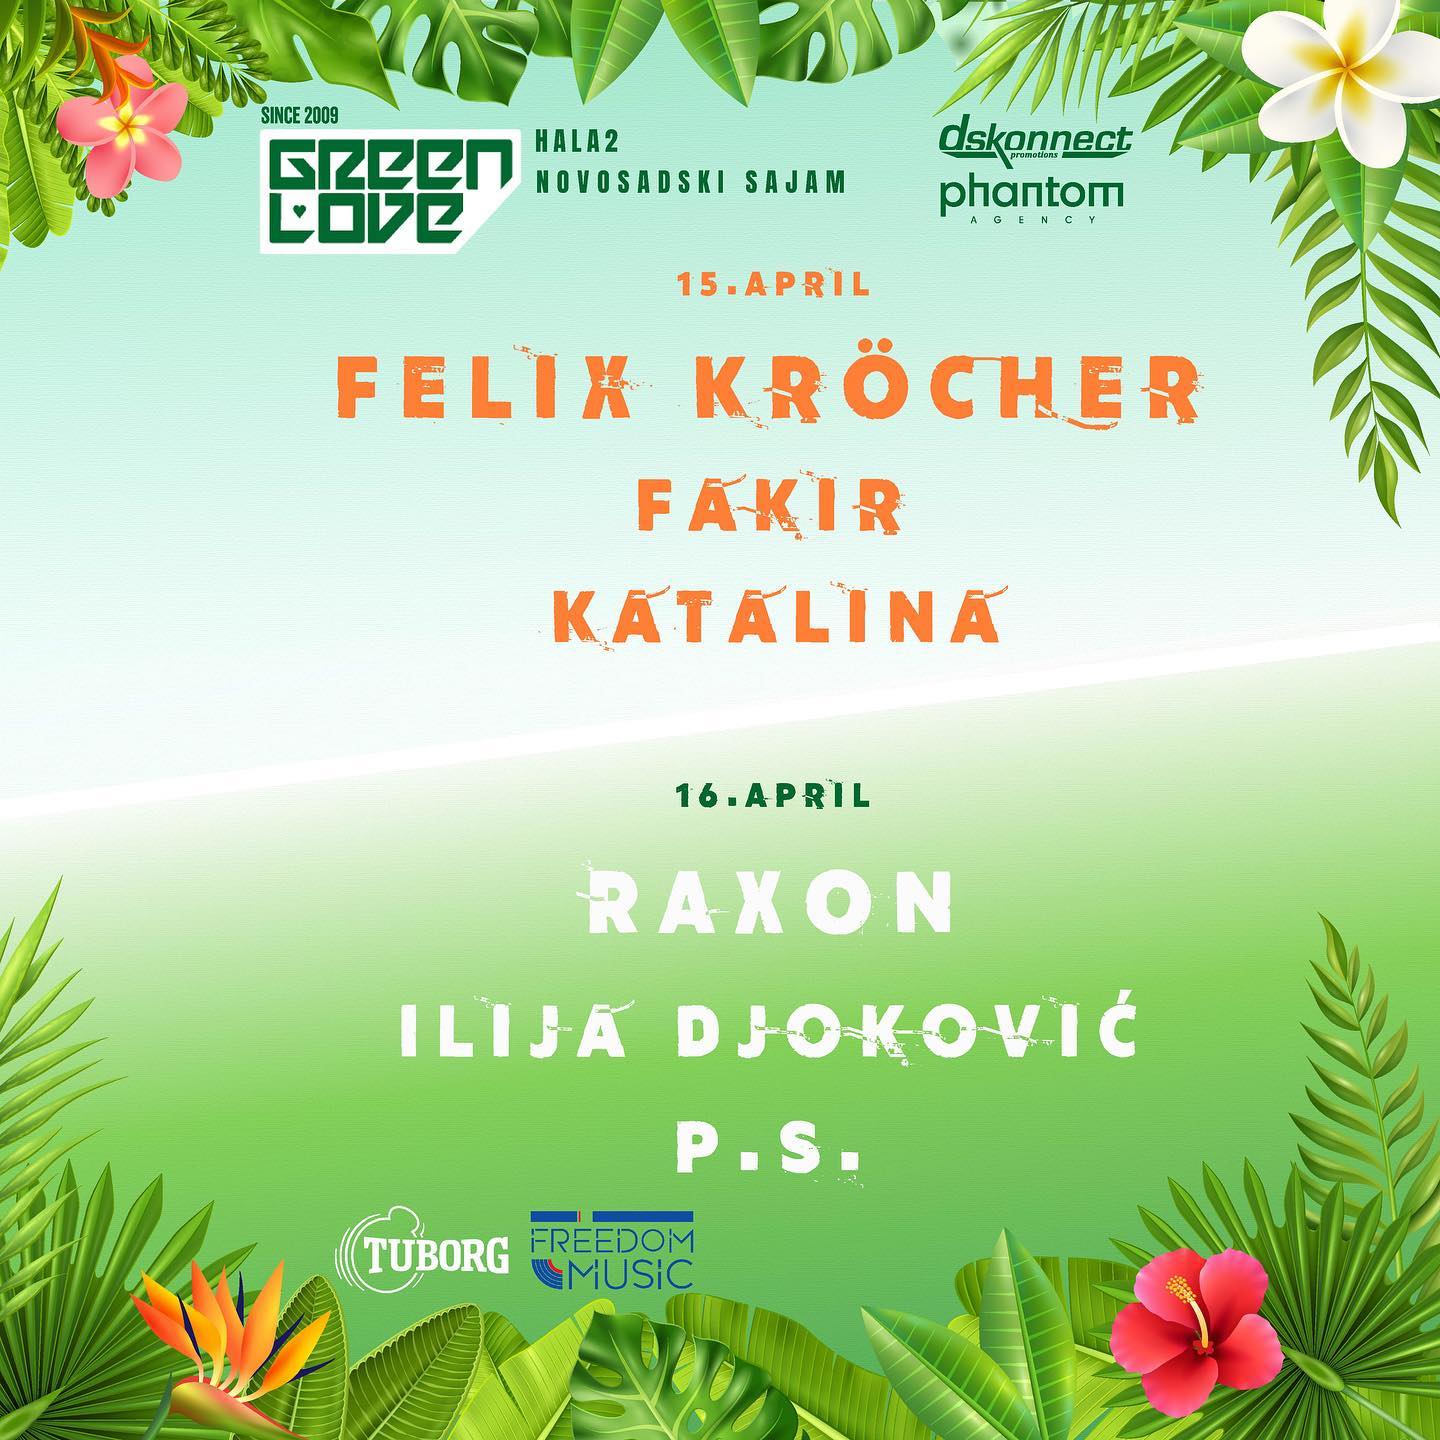 Di-džejevi Felix Krocher i Raxon na aprilskom Green Love festivalu